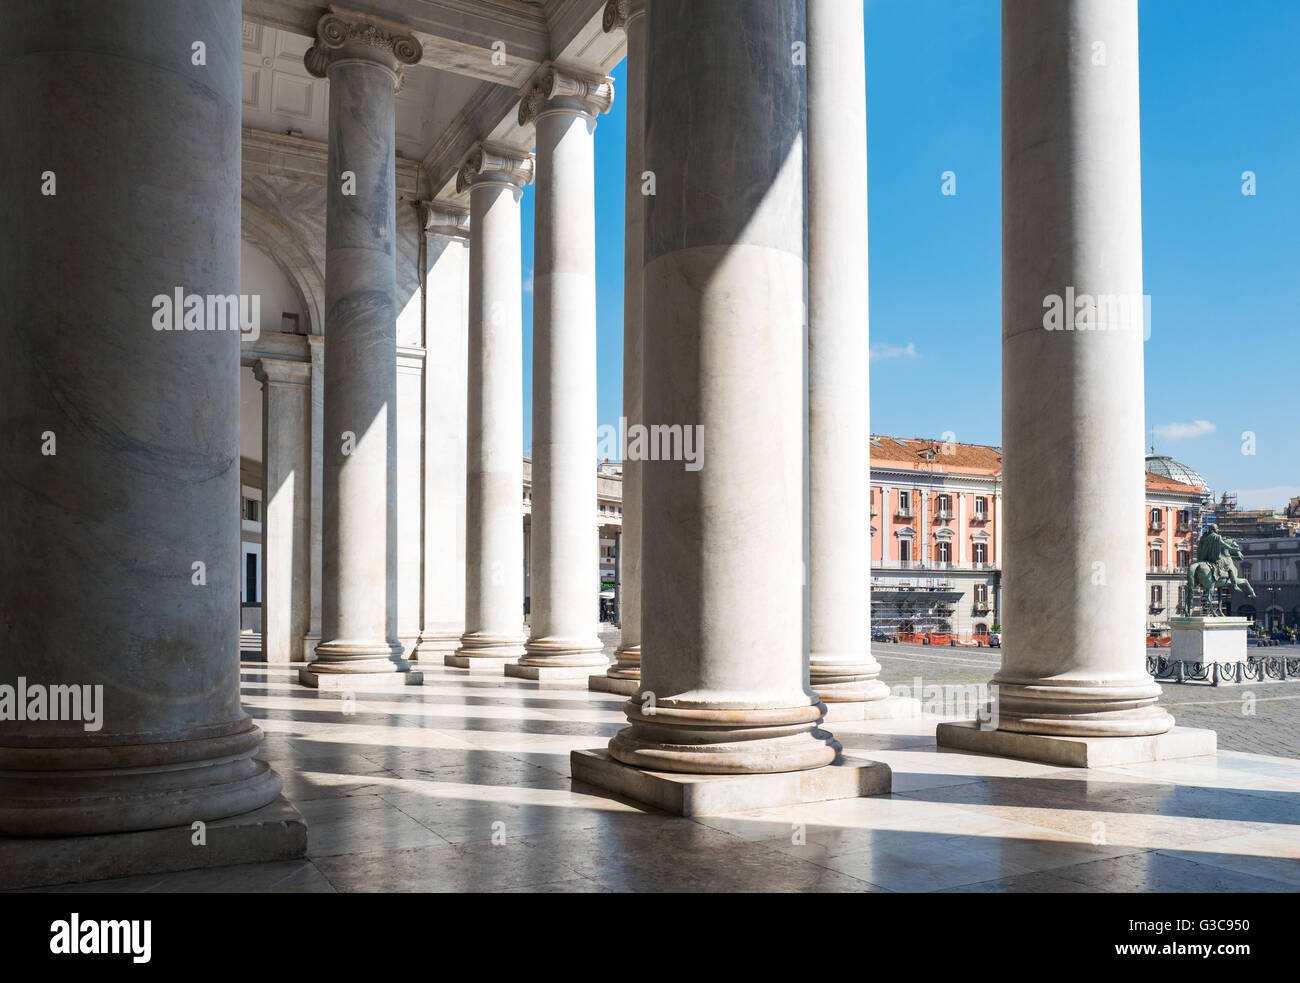 Italy, Naples, Plebiscito square, the atrio columns of the St Francesco di Paola church Stock Photo